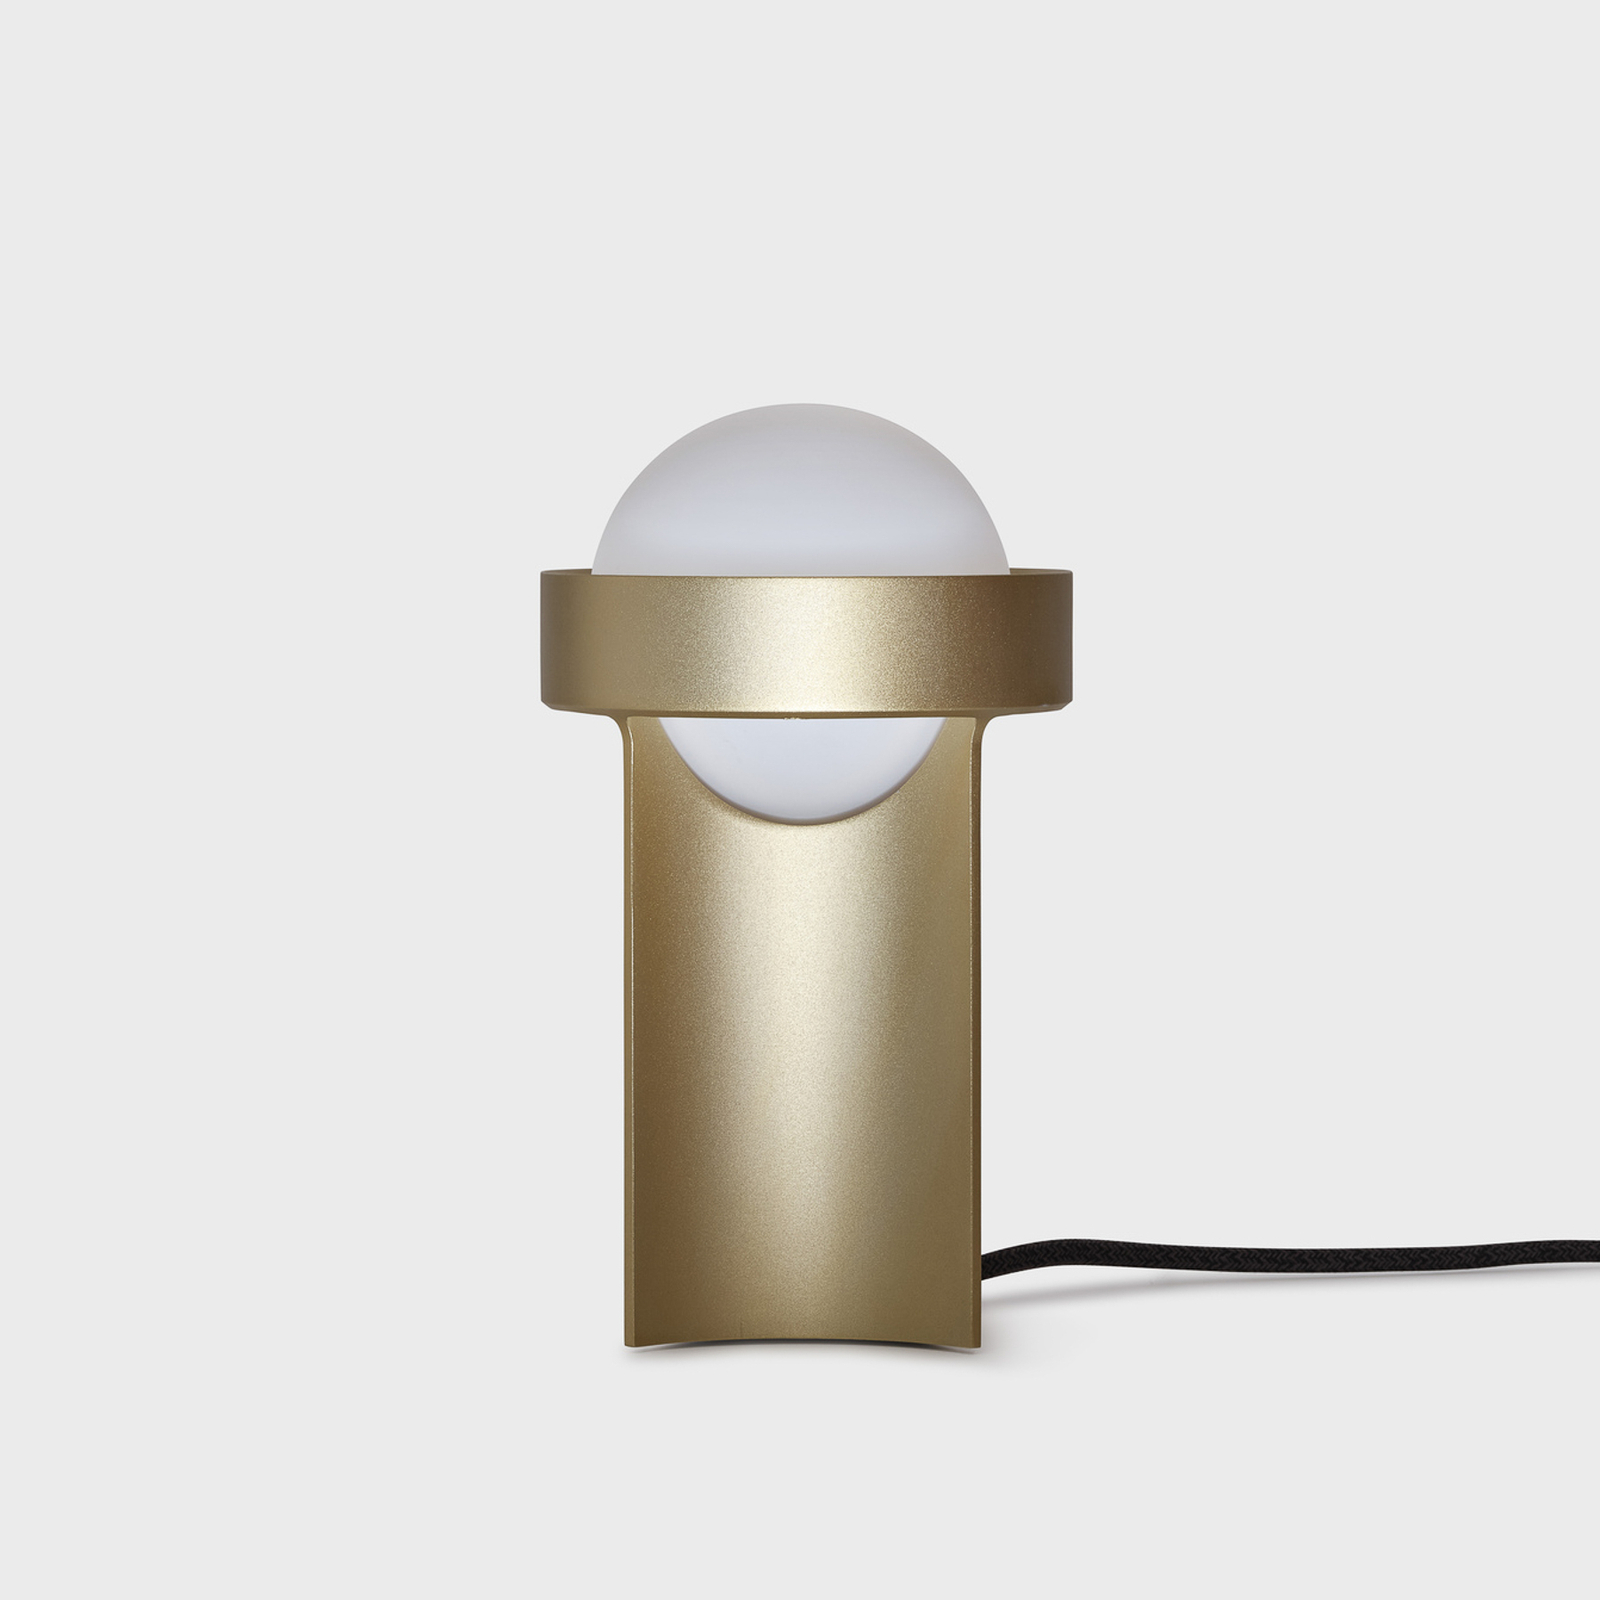 Tala pöytävalaisin Loop pieni, alumiini, LED-pallo III, kultainen